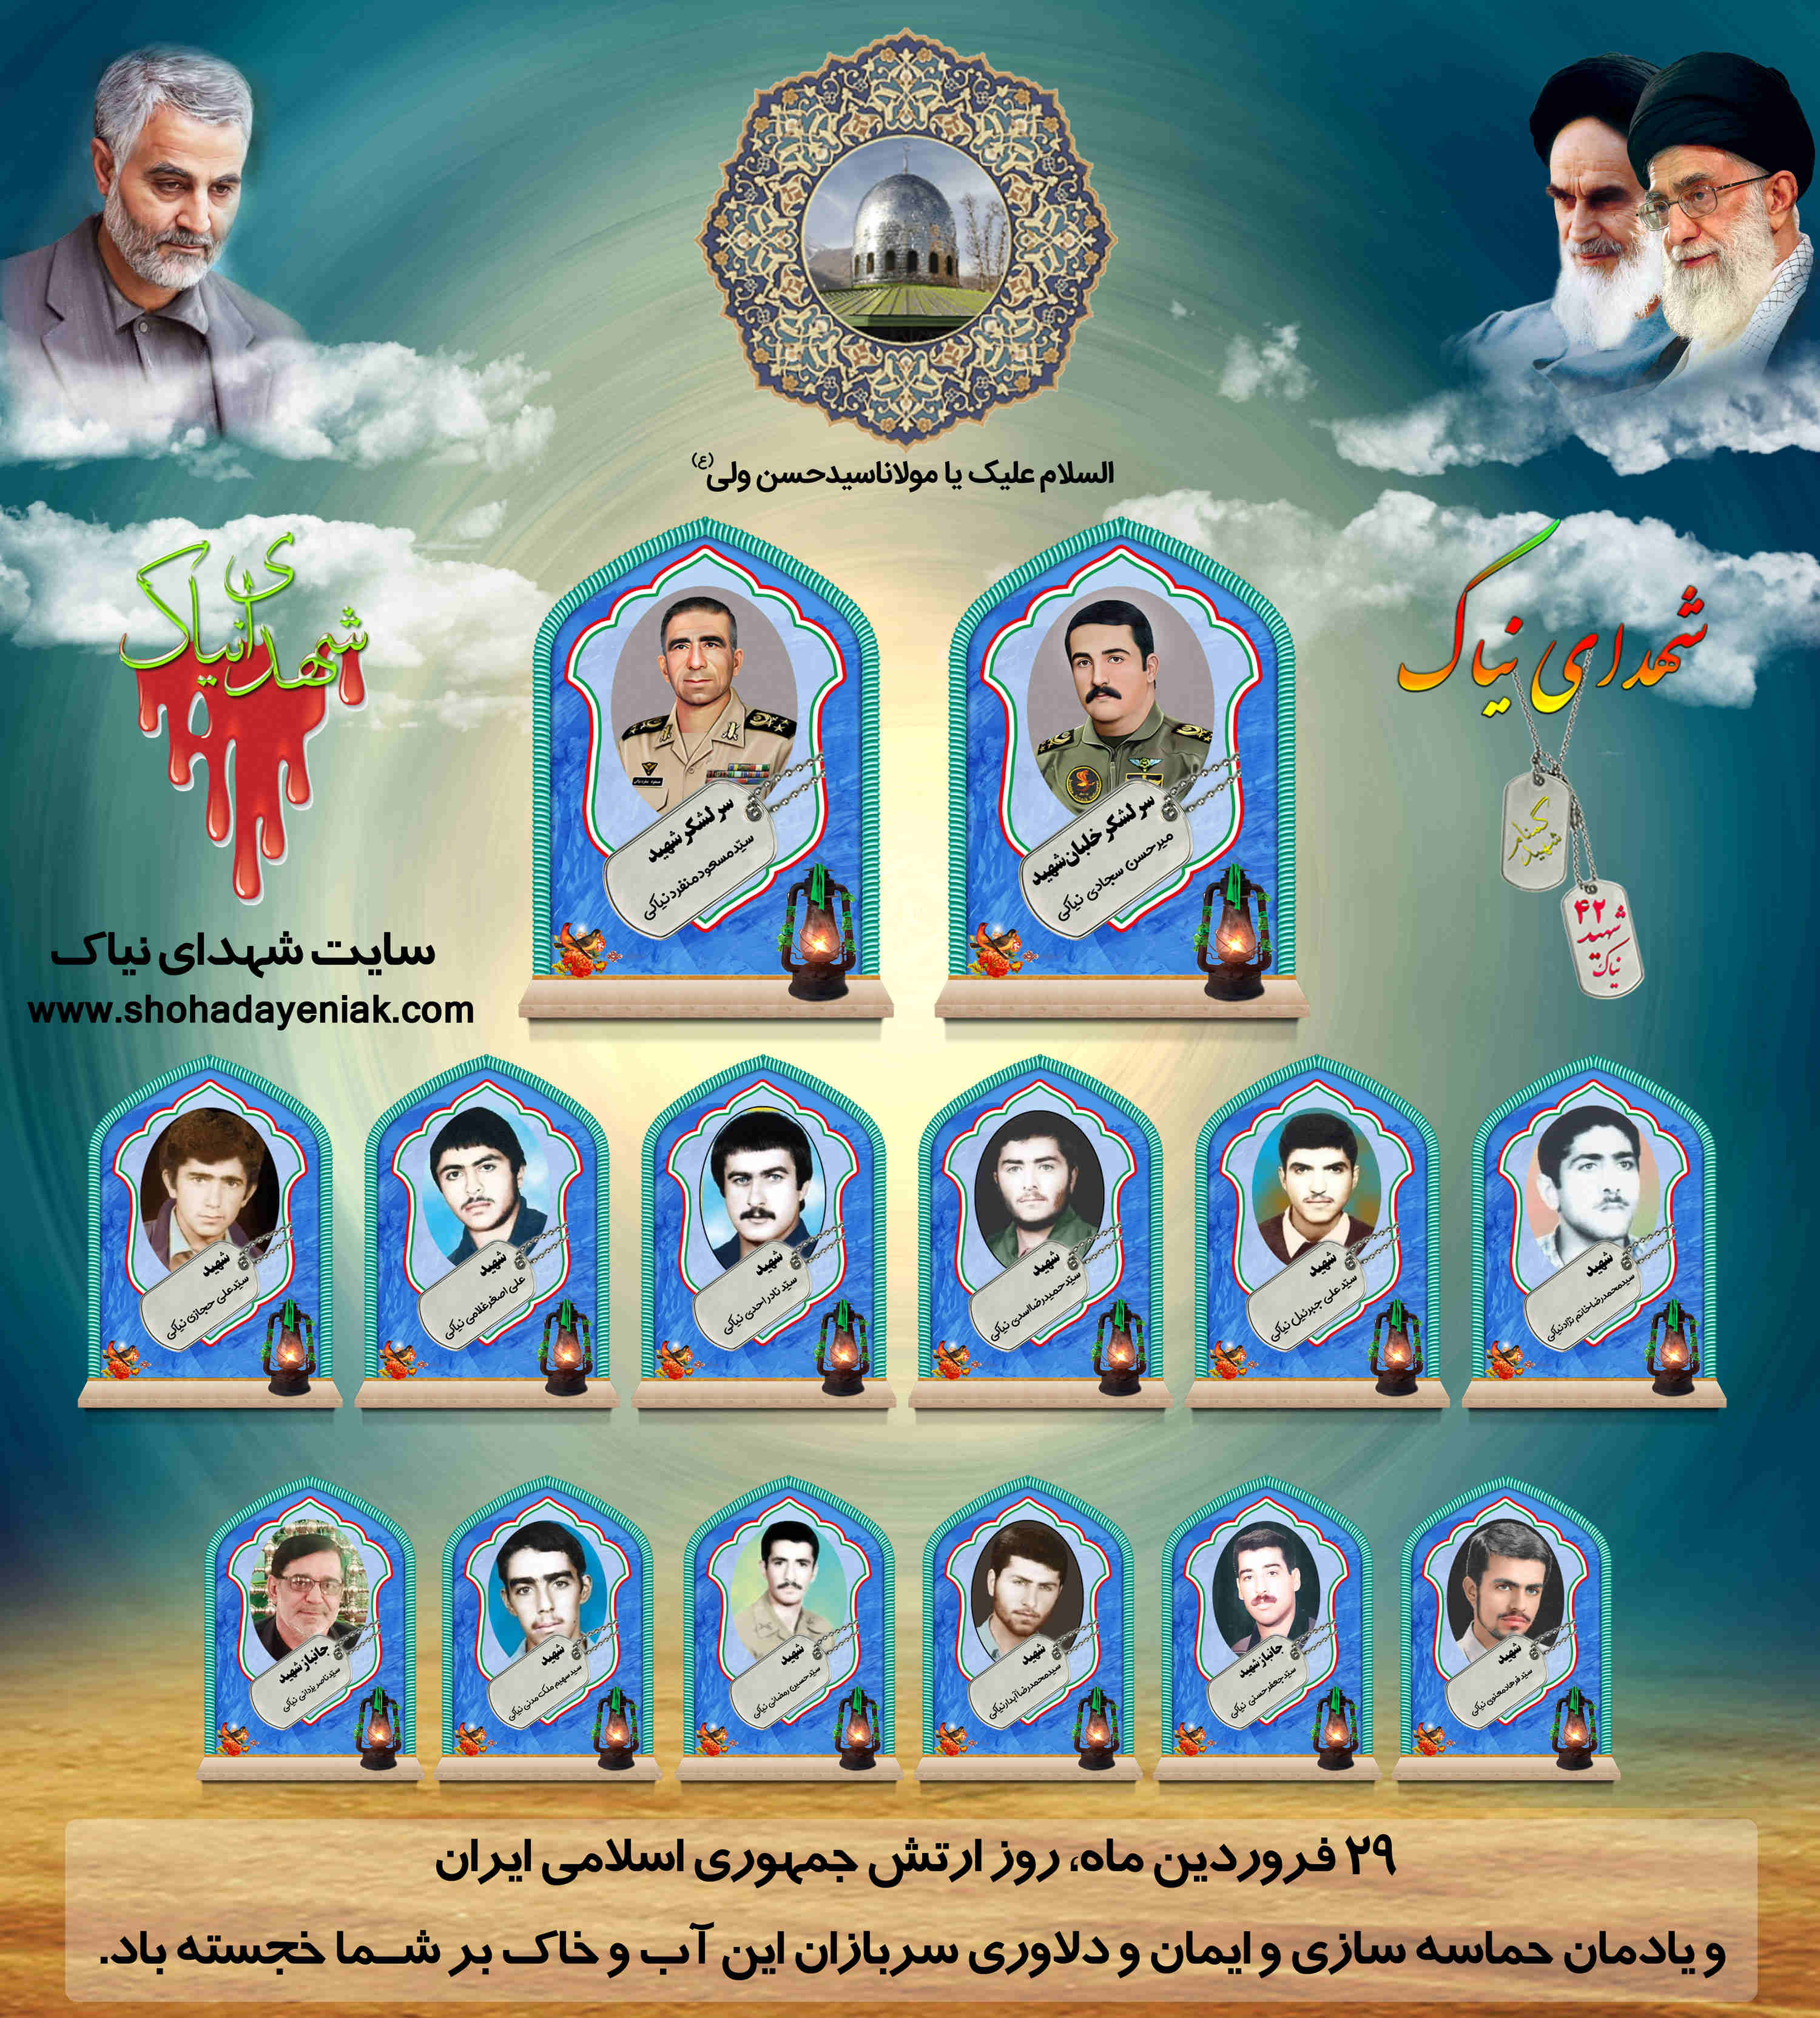 بیست ونهم فروردین روز یادمان حماسه سازی وایمان ودلاوری سربازان ارتش جمهوری اسلامی ایران مبارک